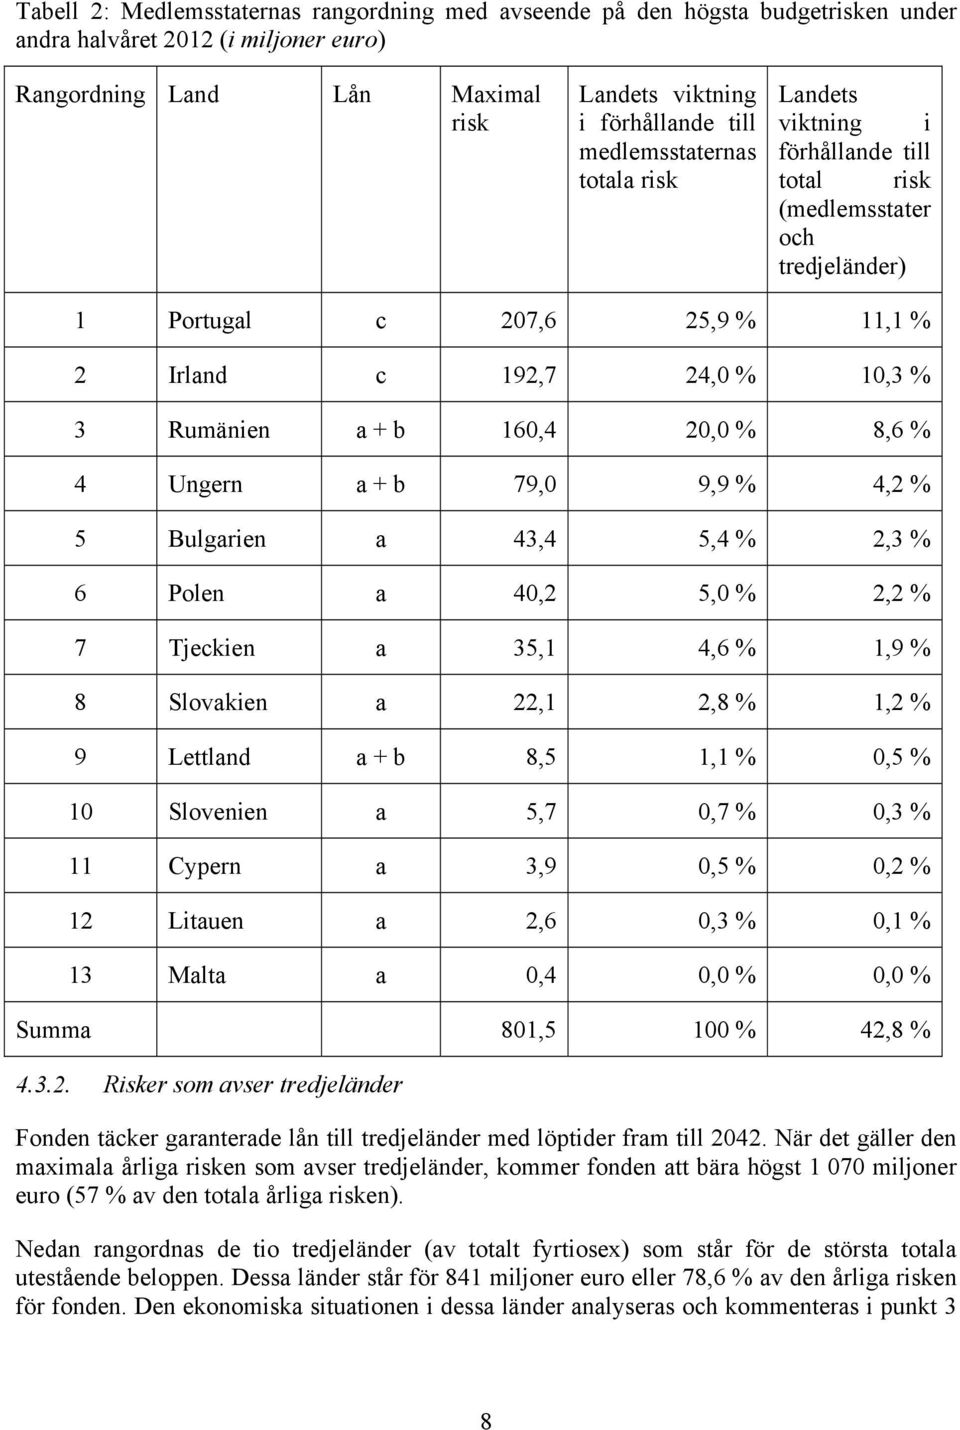 20,0 % 8,6 % 4 Ungern a + b 79,0 9,9 % 4,2 % 5 Bulgarien a 43,4 5,4 % 2,3 % 6 Polen a 40,2 5,0 % 2,2 % 7 Tjeckien a 35,1 4,6 % 1,9 % 8 Slovakien a 22,1 2,8 % 1,2 % 9 Lettland a + b 8,5 1,1 % 0,5 % 10